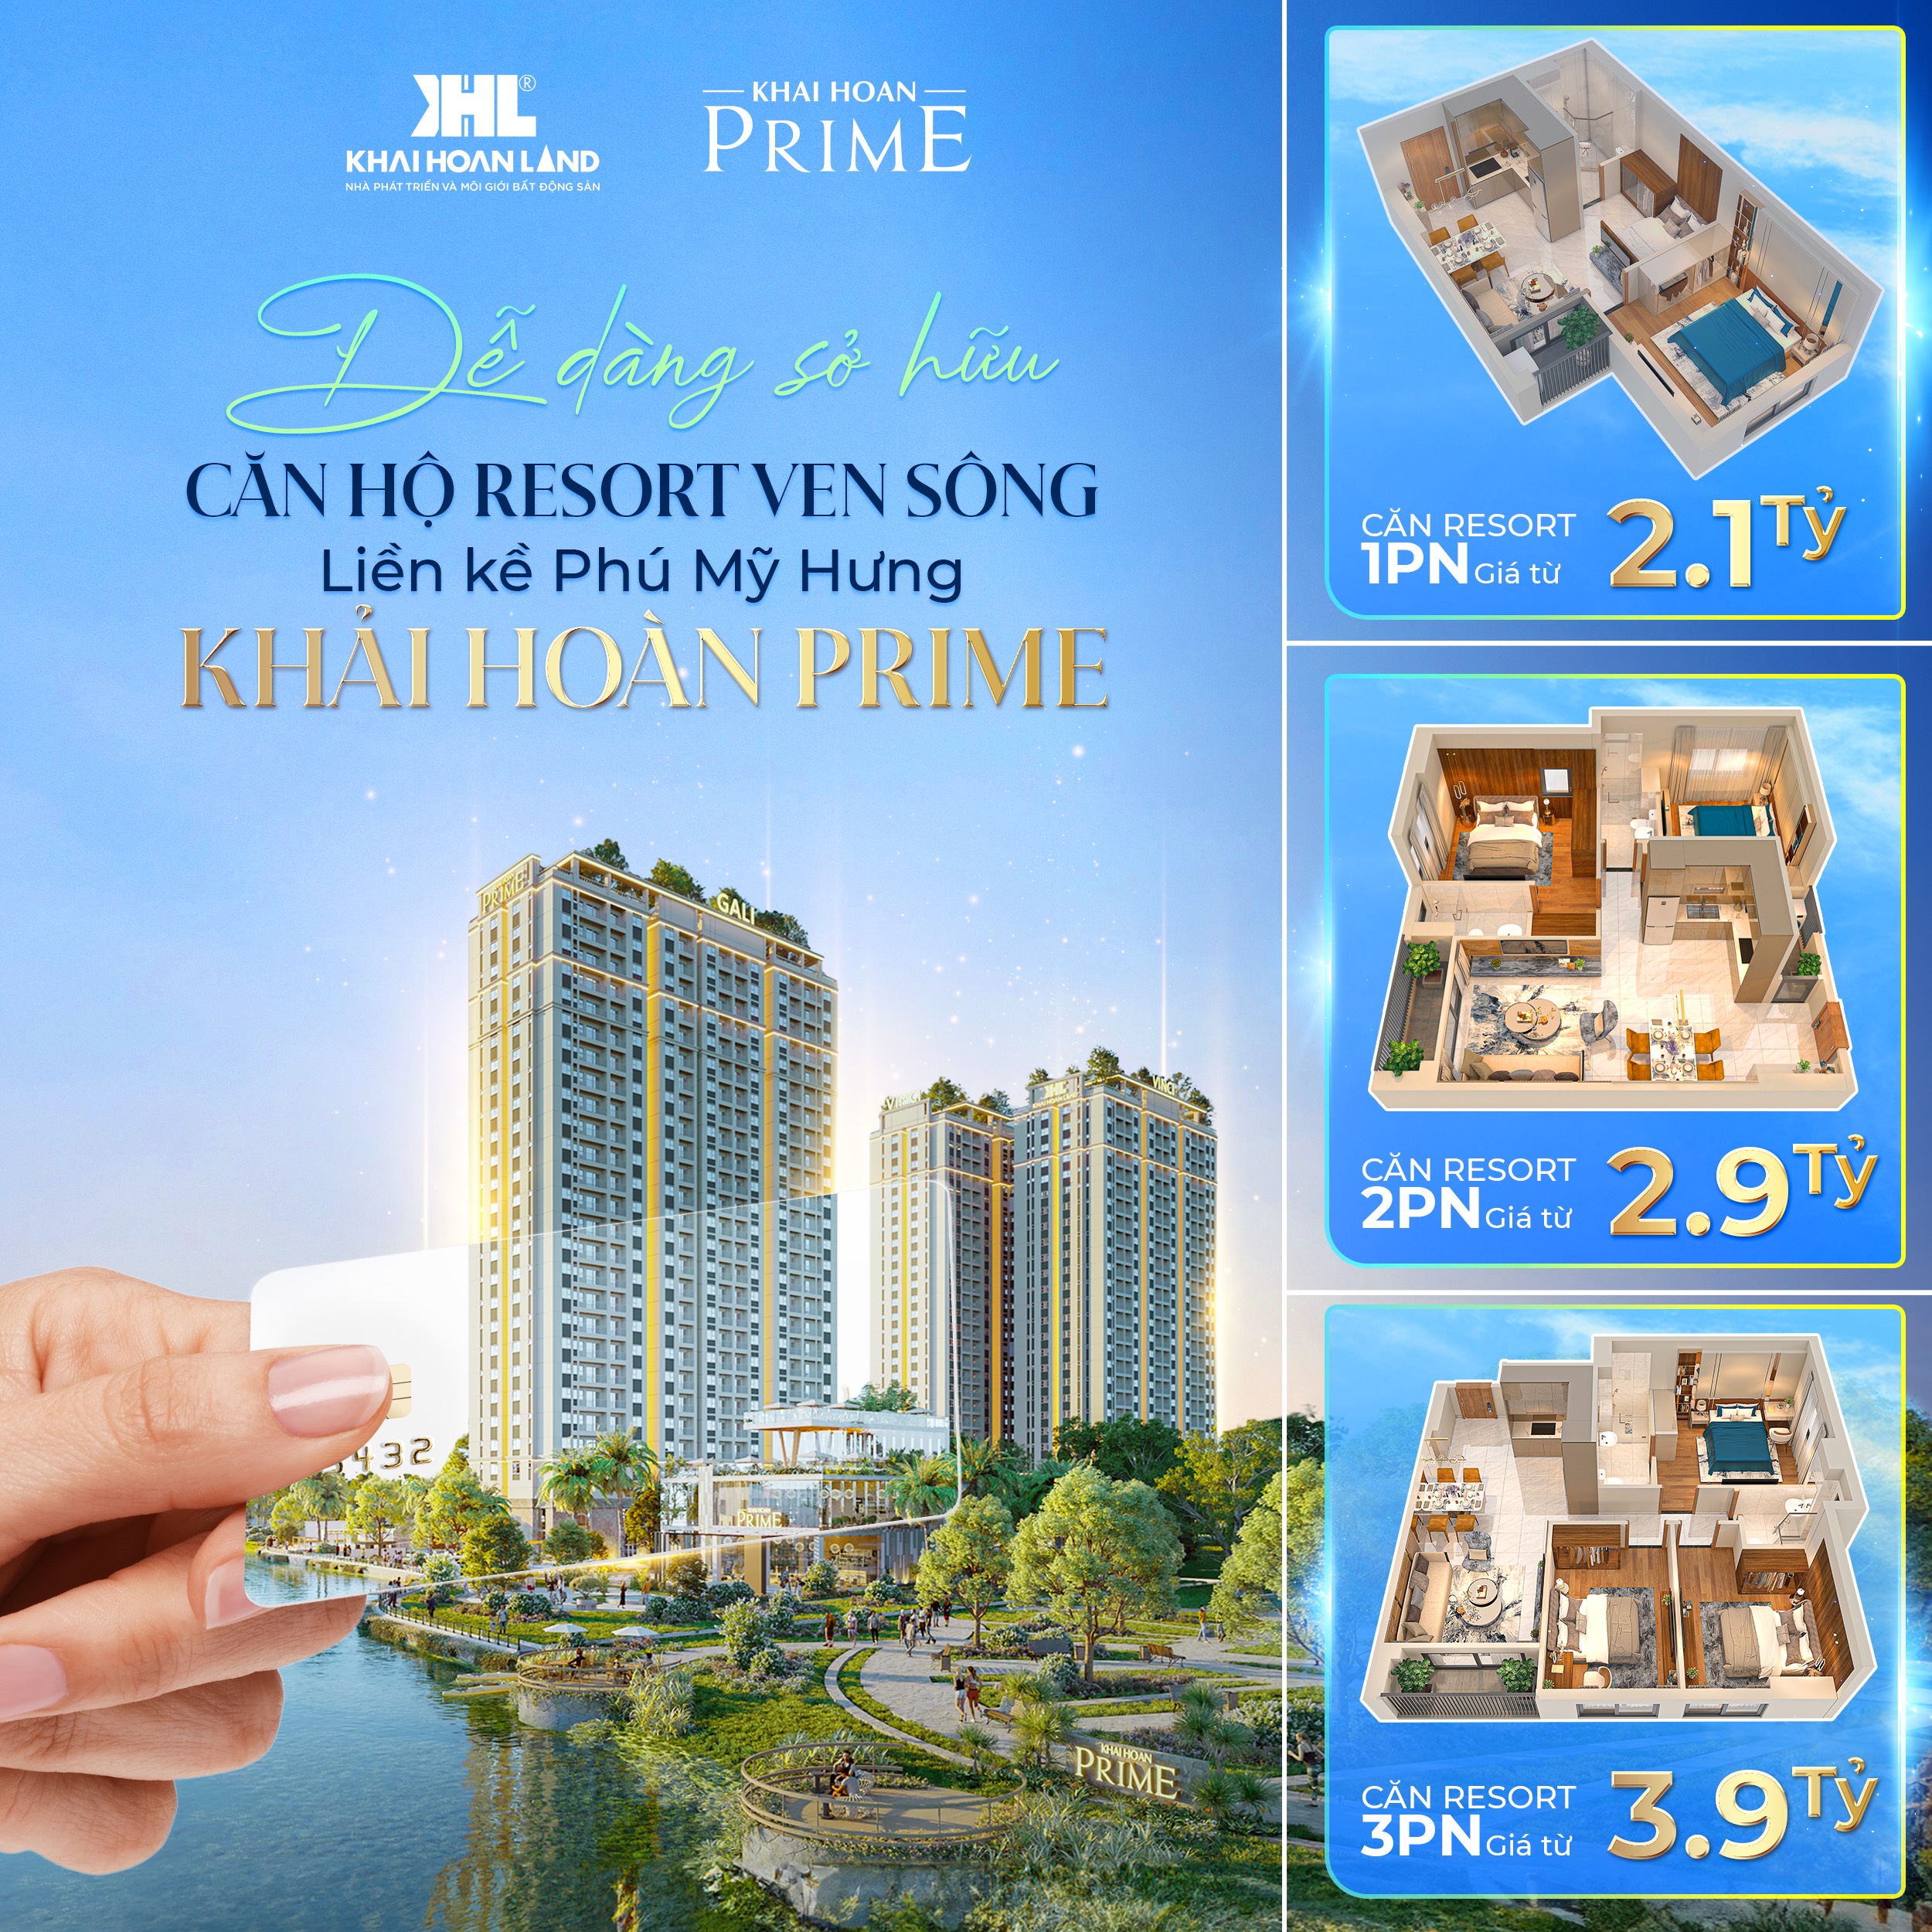 Căn hộ Khai Hoan Prime, giá 2,1 tỷ, vay 0 gốc-lãi 30 tháng, chiết khấu đến 12%-01